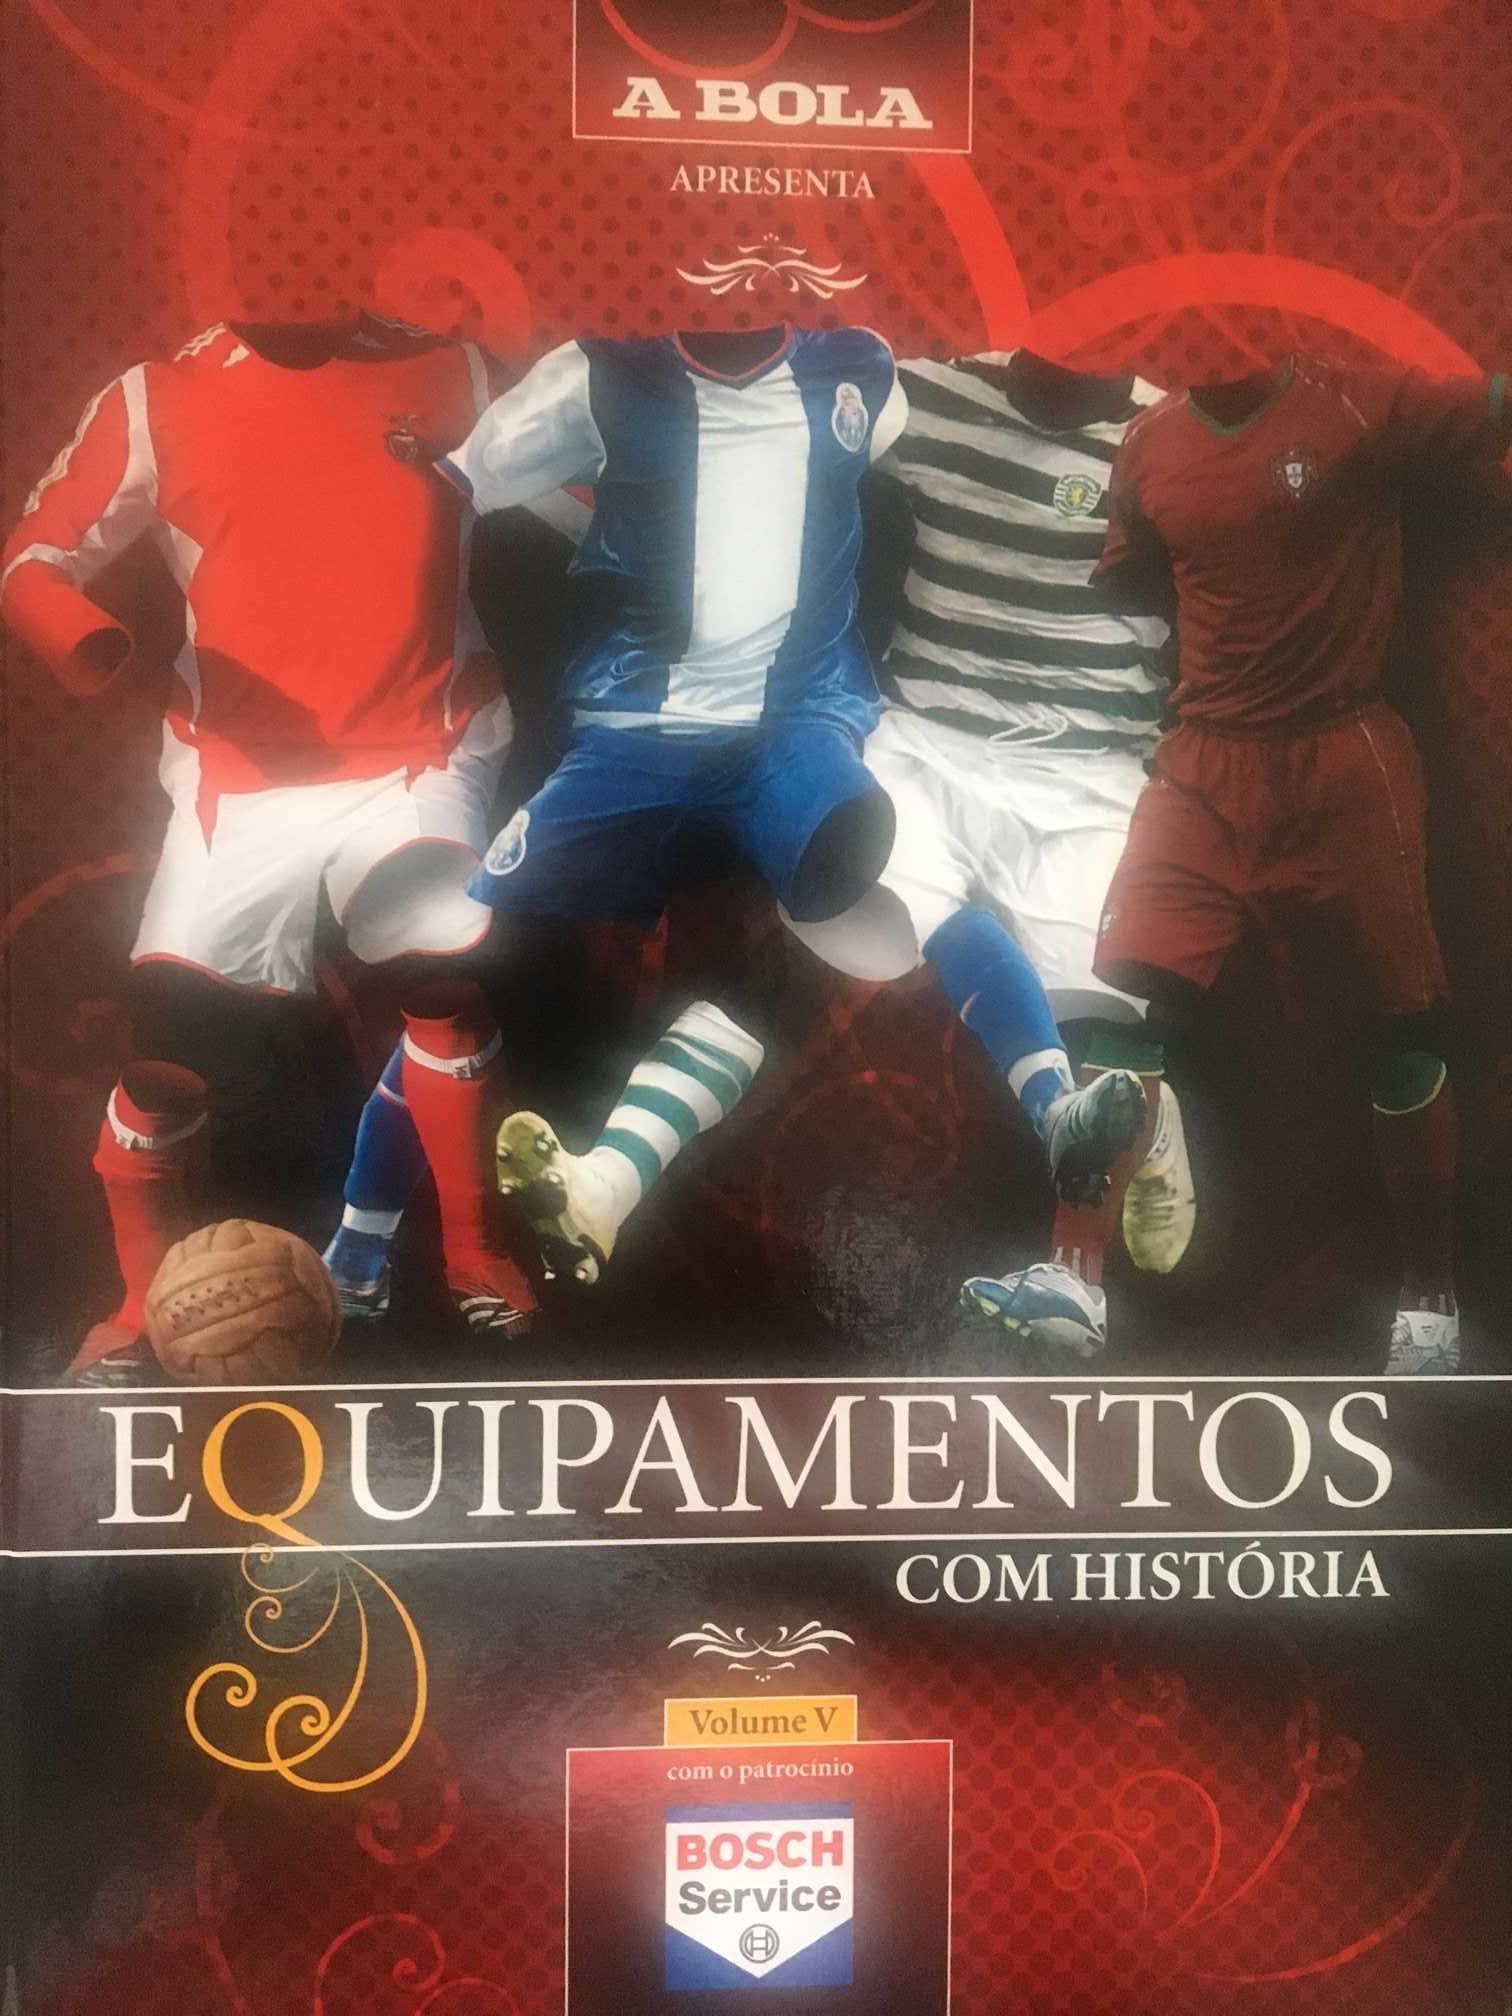 Futebol 5 volumes Equipamentos 3 grandes e seleção desde 1890 até 2000